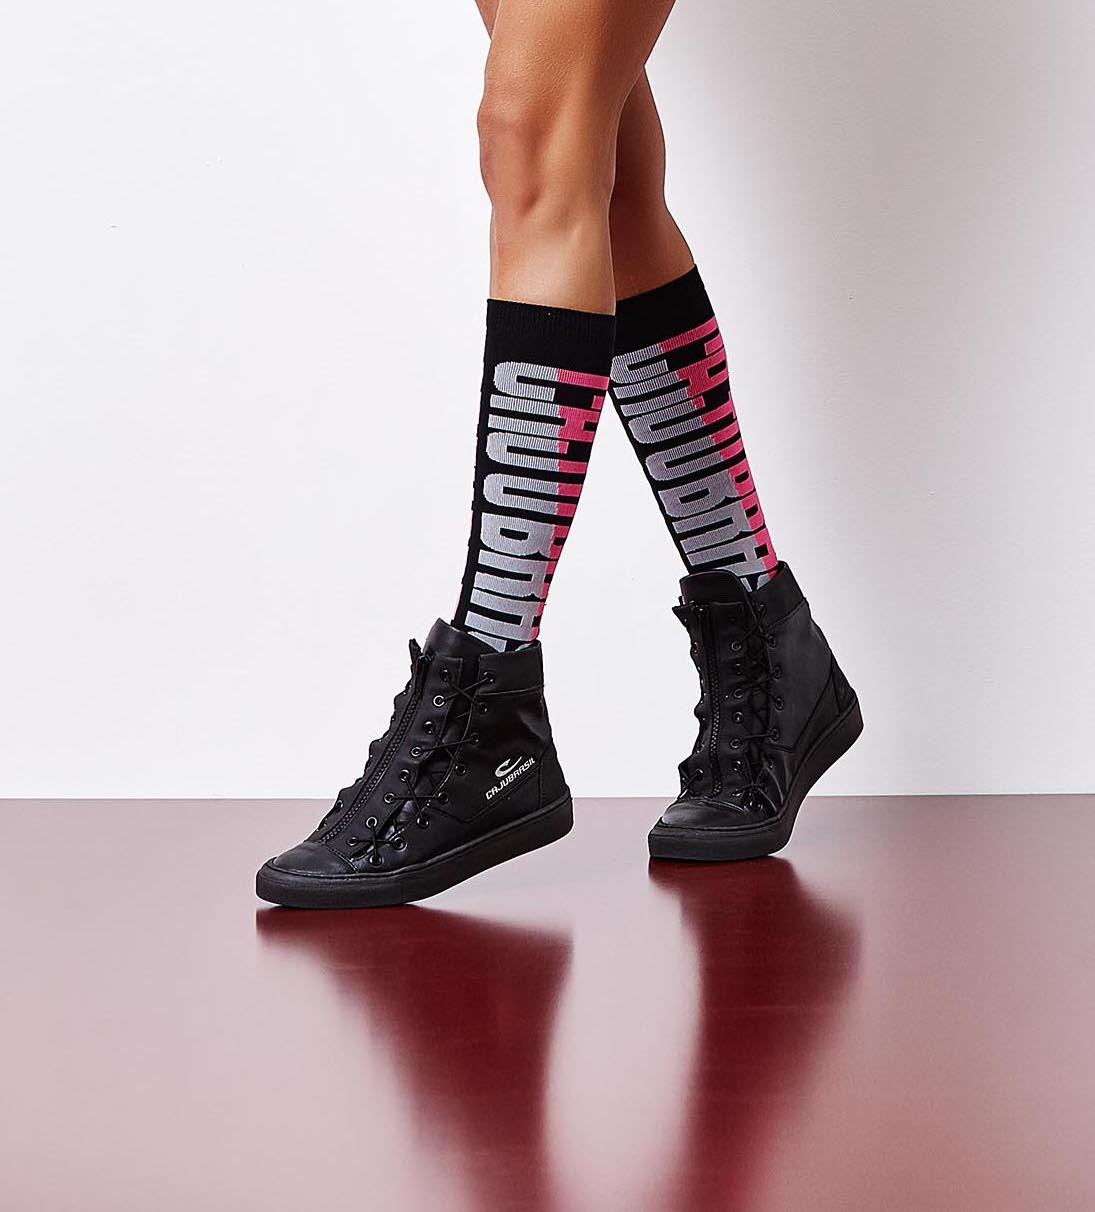 High Compression CajuBrasil Socks - Black/Pink